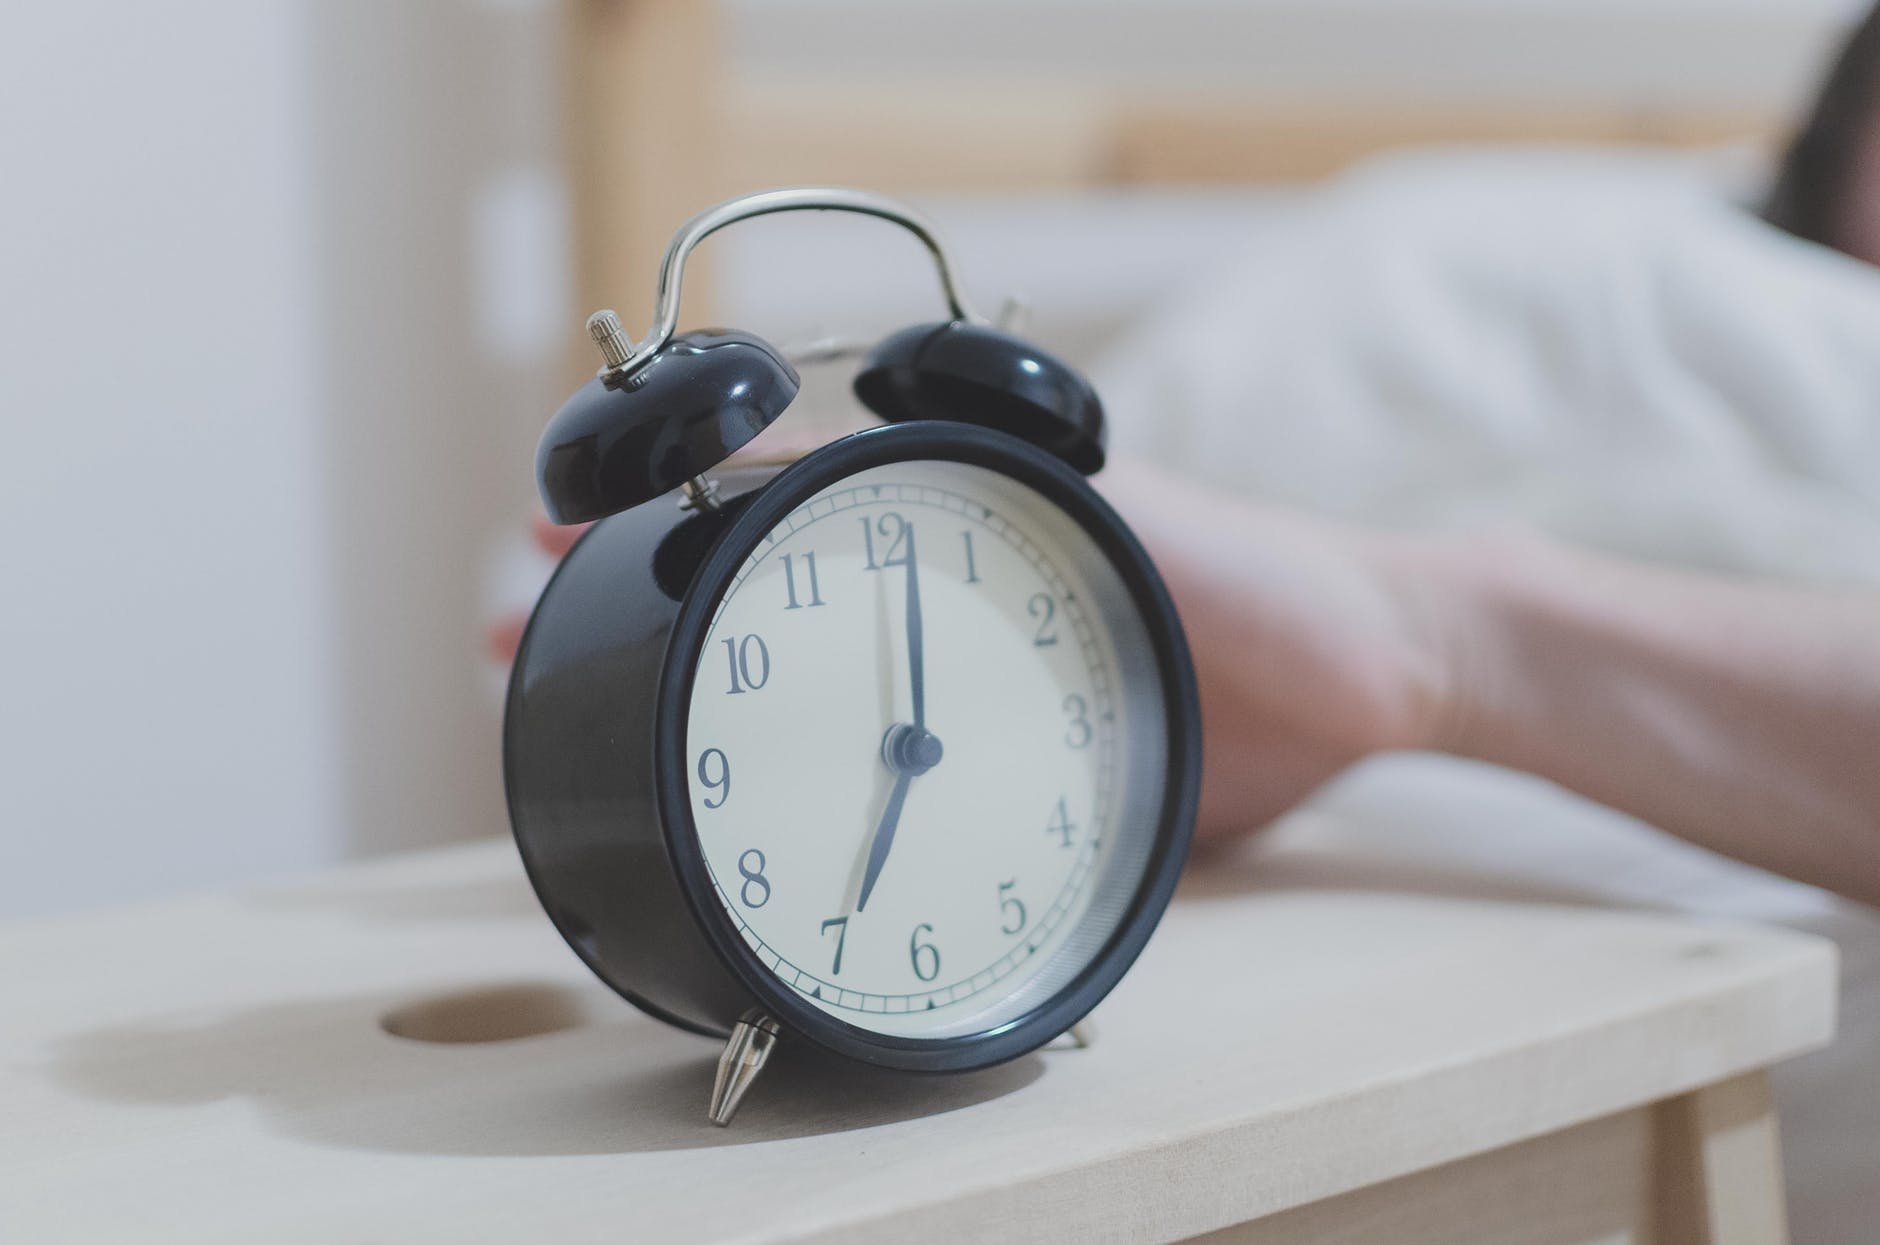 Three Ways to Make Work Worth Waking Up For